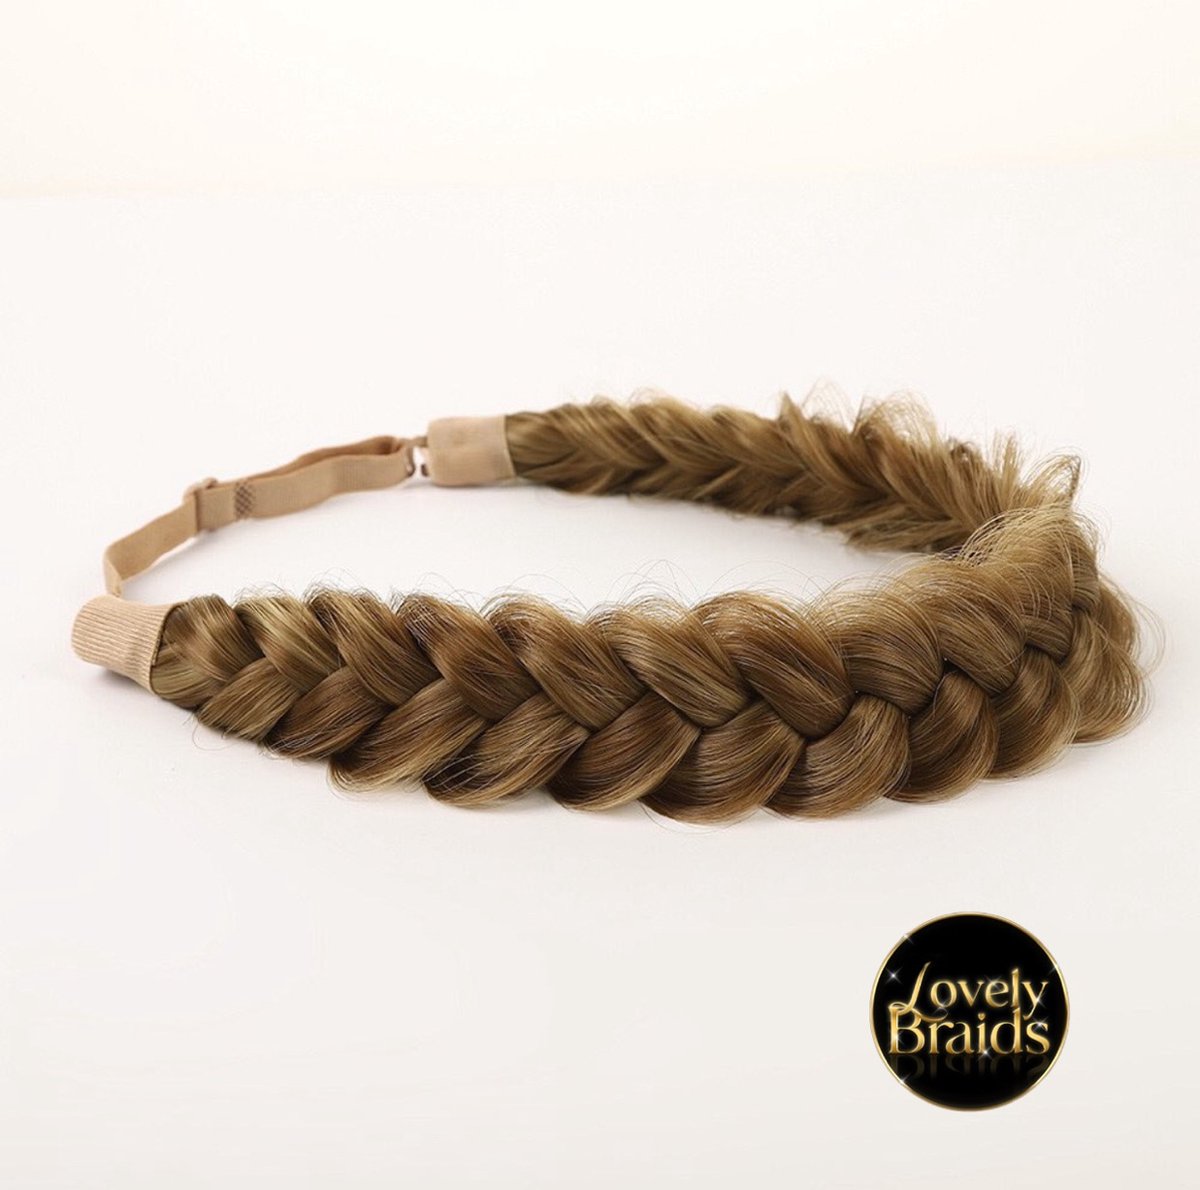 Lovely braids - bronde bliss - hair braids - messy - haarband - infinity braids - Haarvlecht band - fashion - diadeem - festival look - festival hair - hair braid - hair fashion - haarmode